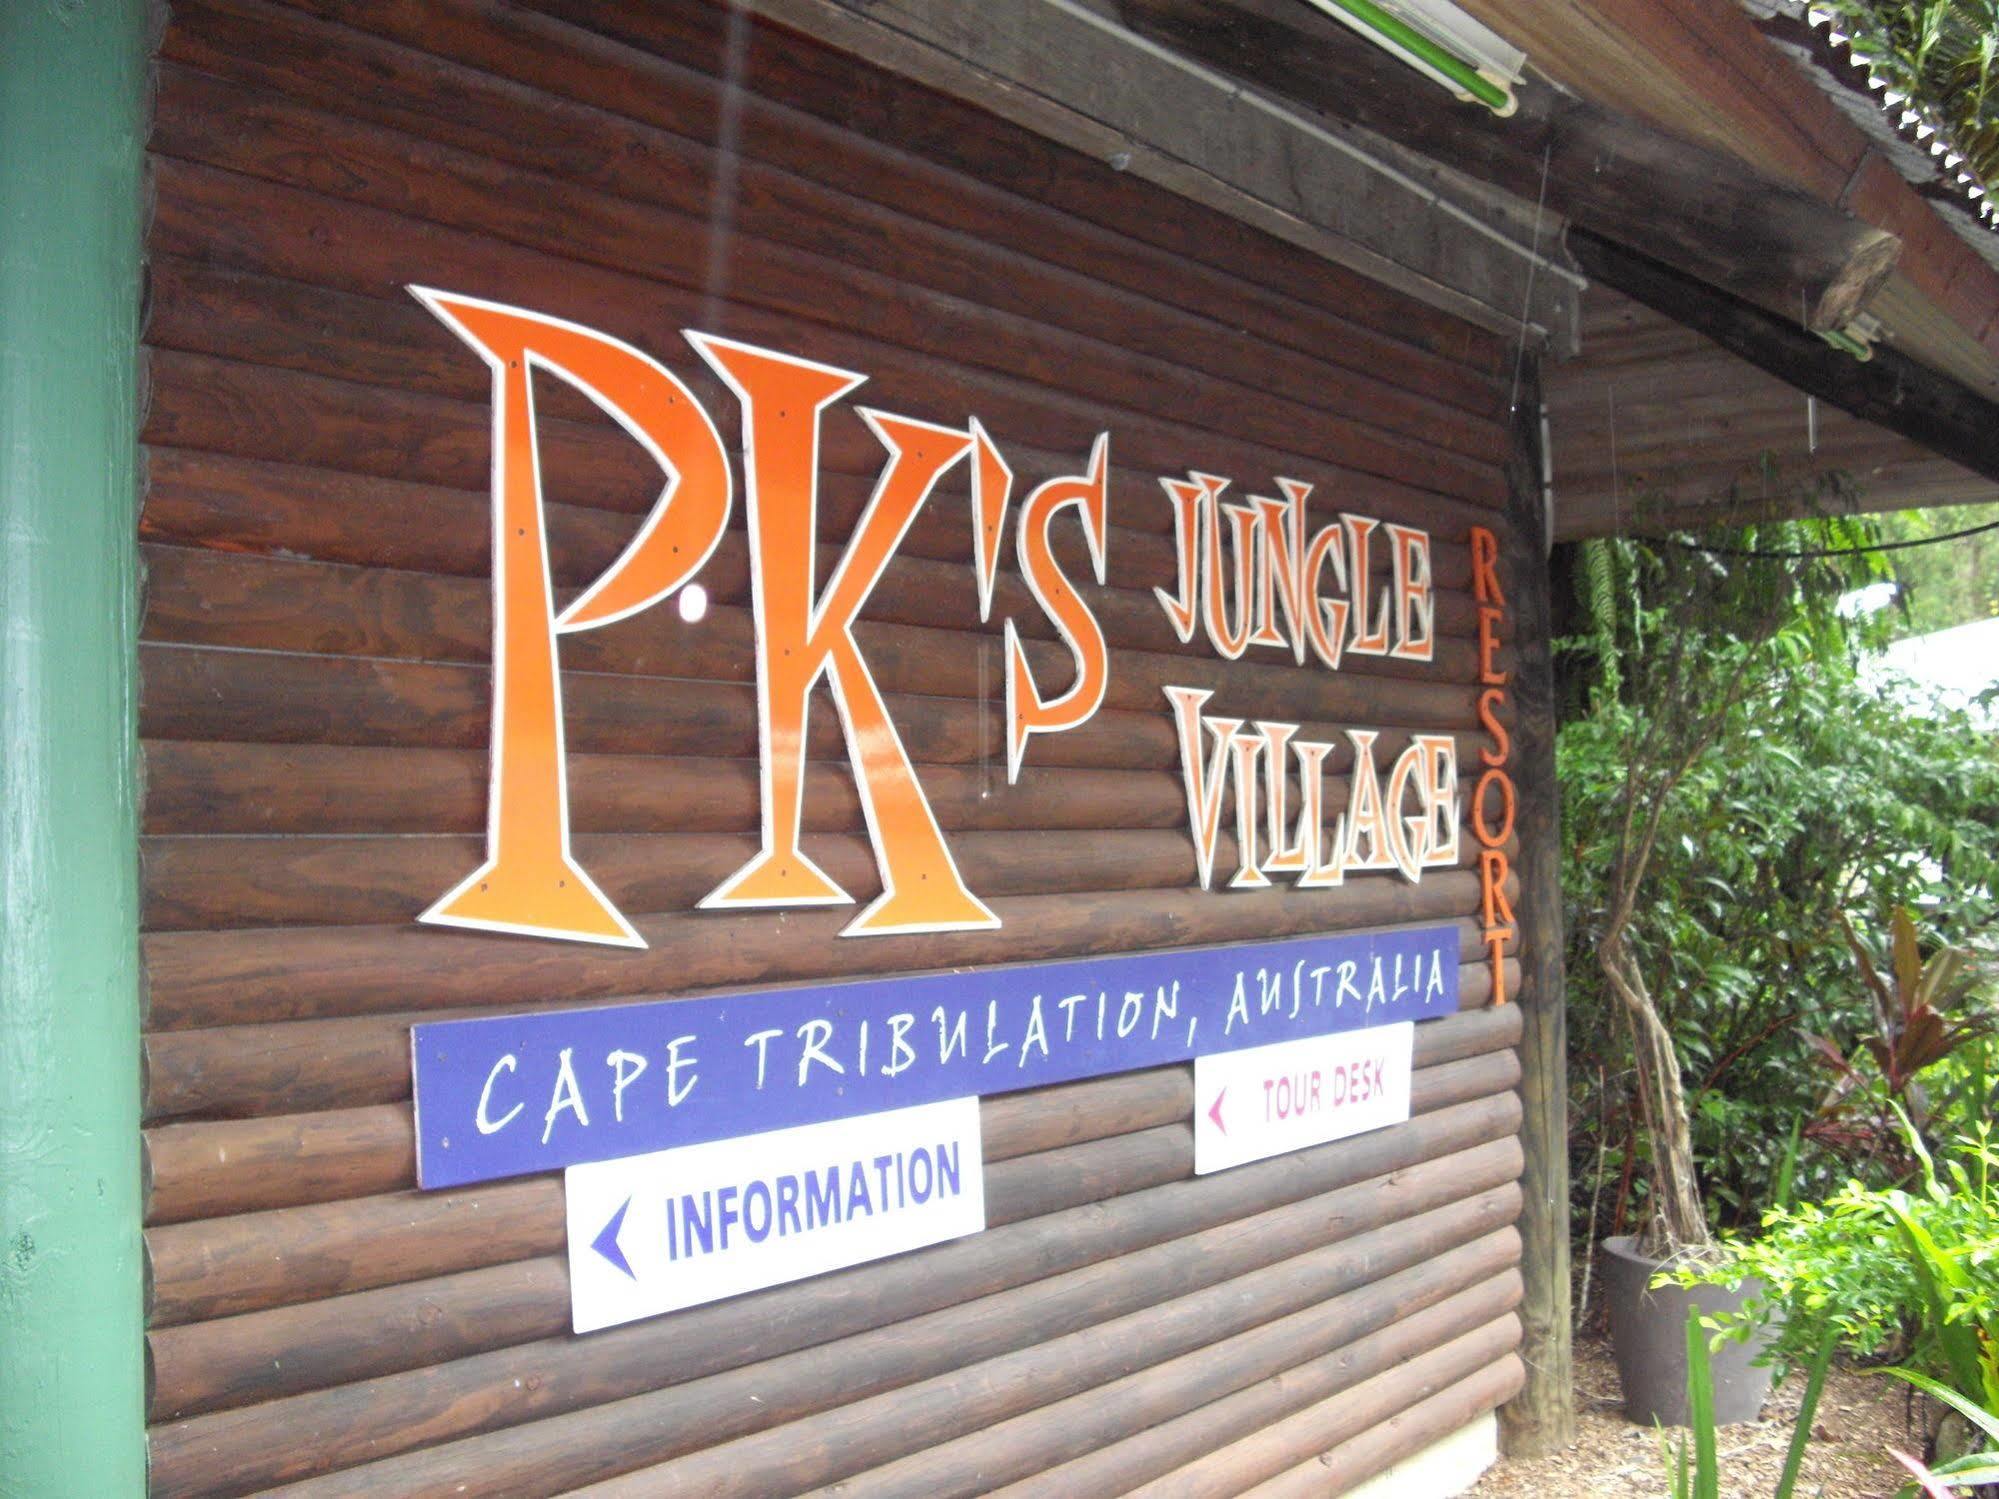 Pk'S Jungle Village Cape Tribulation Extérieur photo